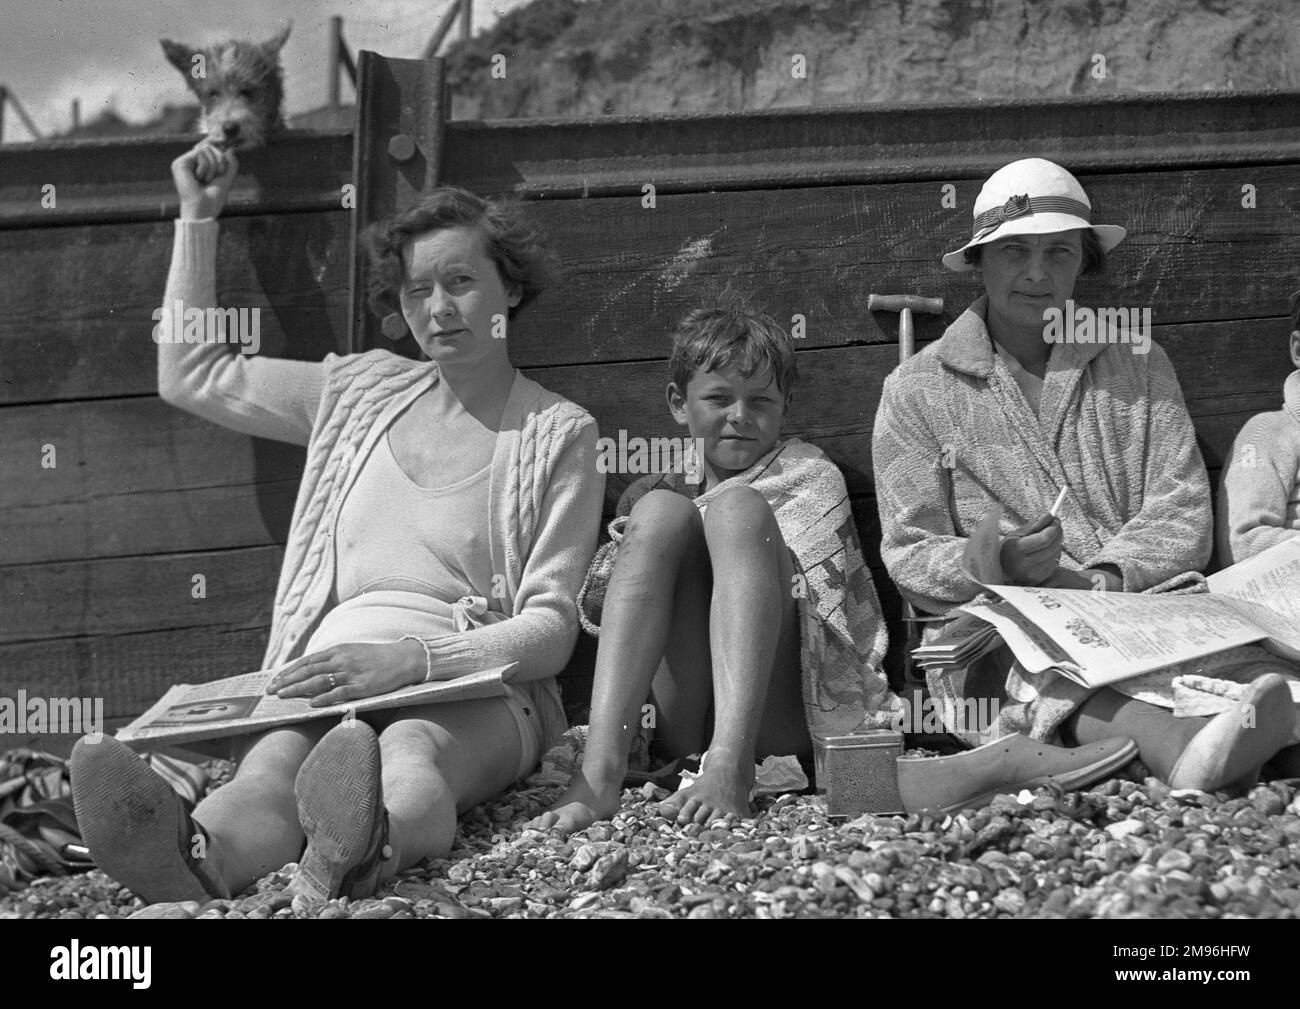 Persone in vacanza, appoggiate contro un demolitore su una spiaggia di ciottoli. La donna a sinistra sta tenendo un po' di cibo per un piccolo cane. Foto Stock